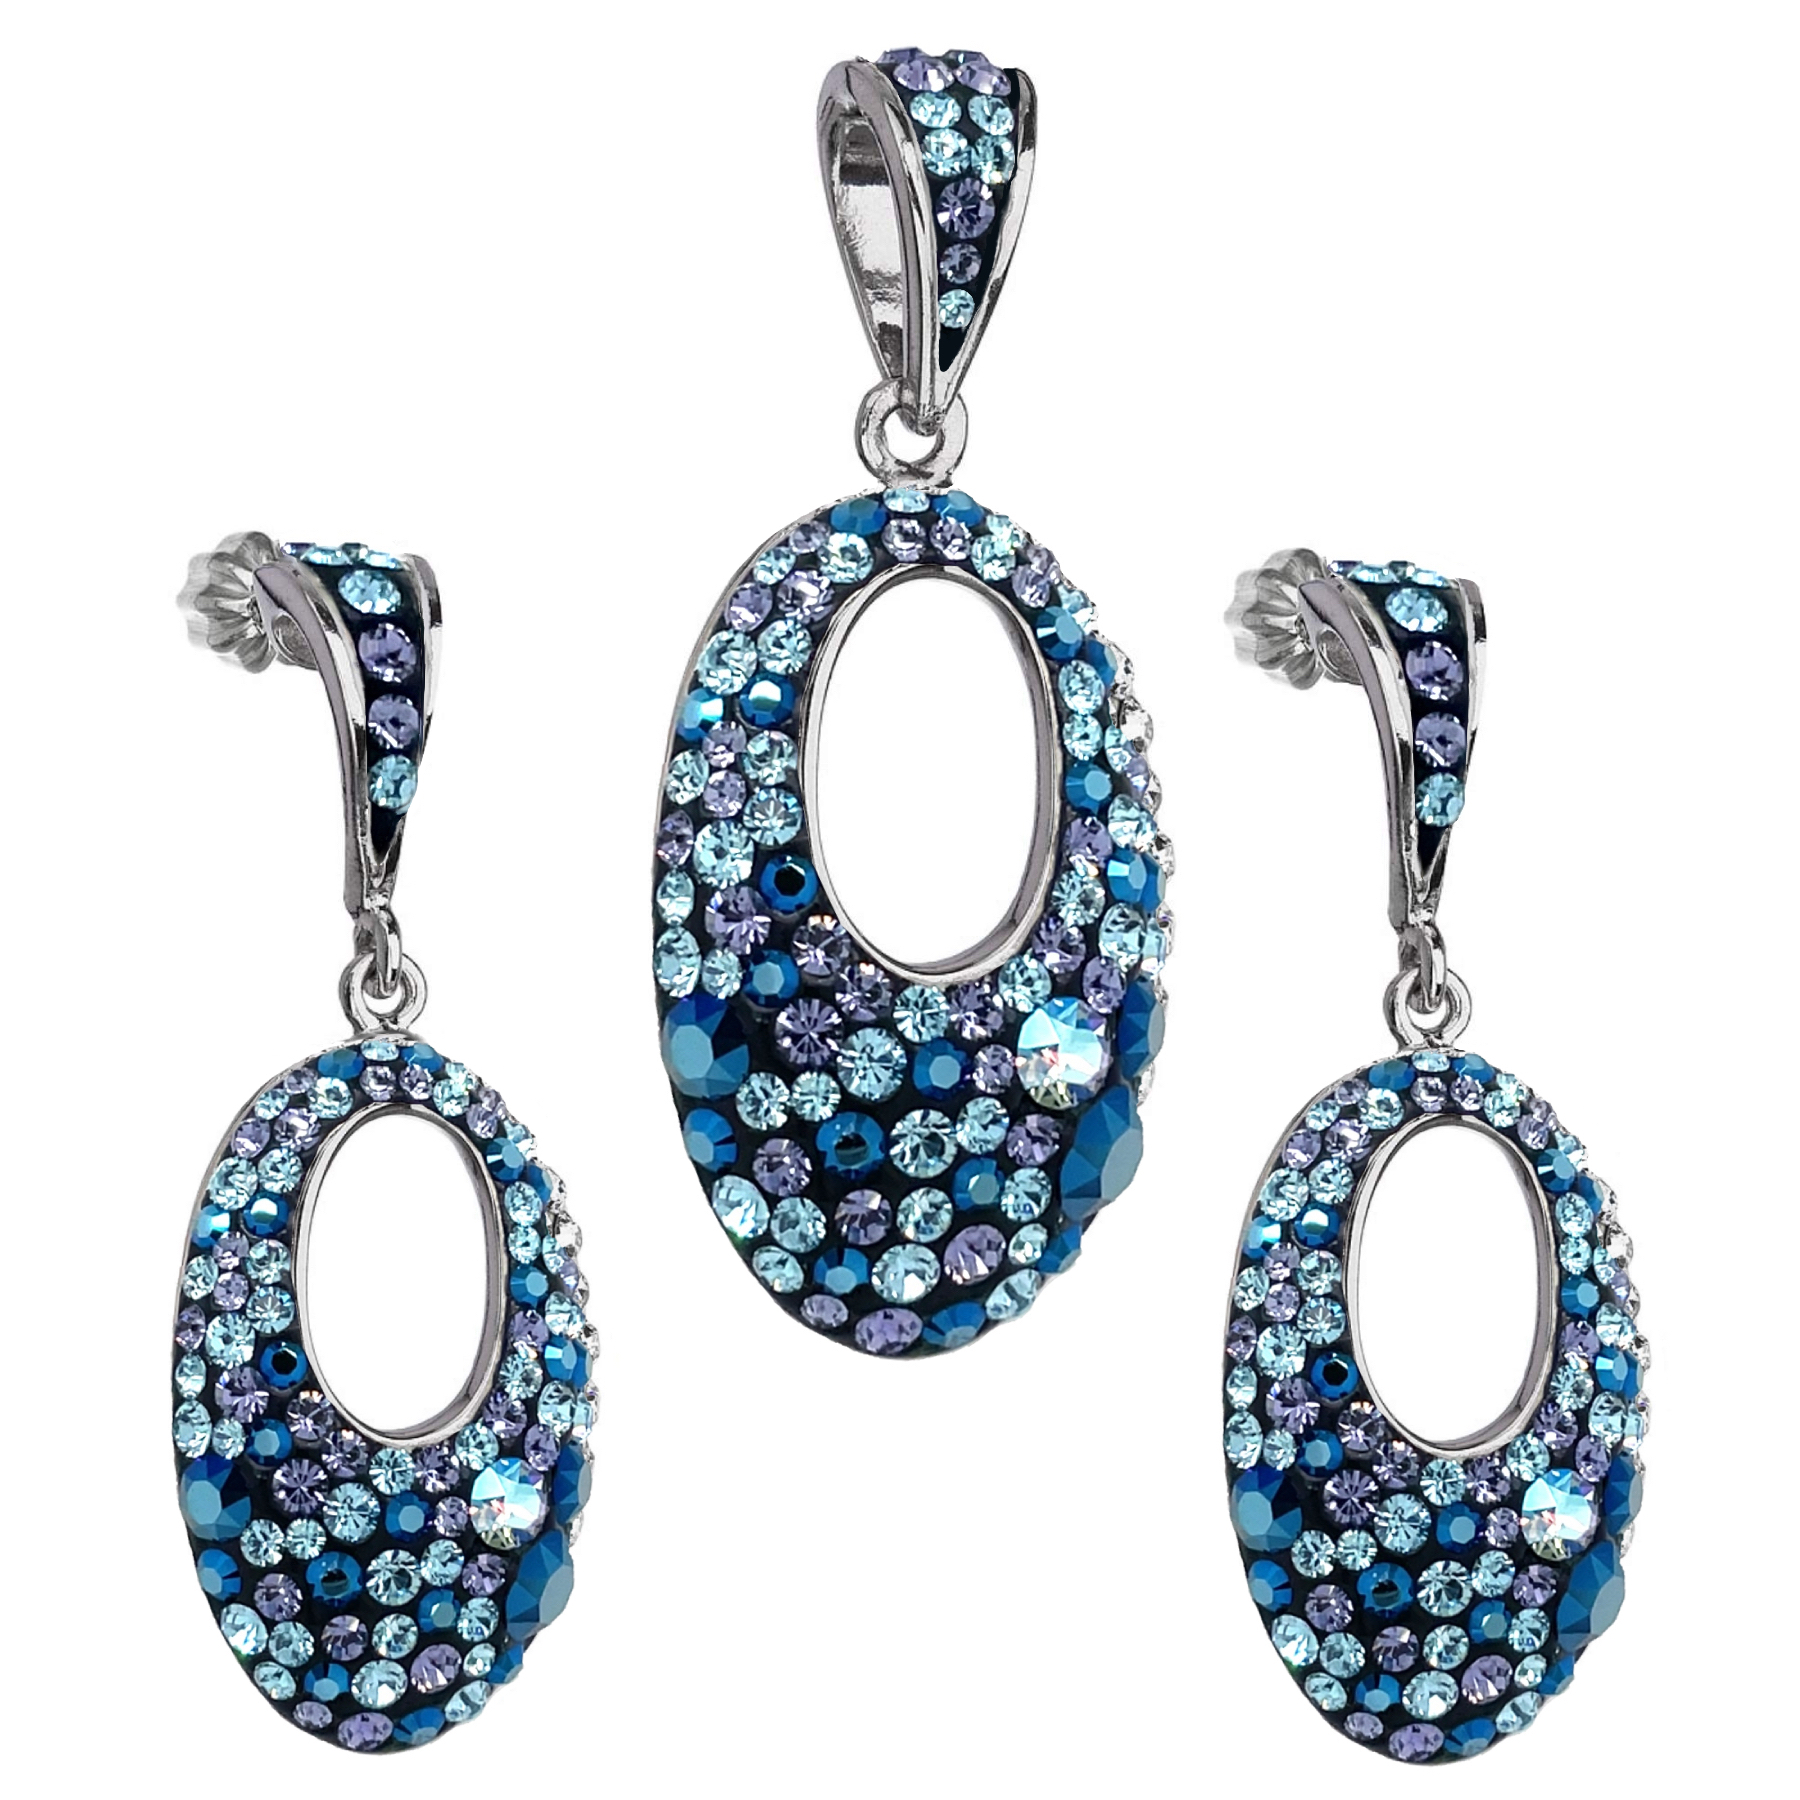 Evolution Group Sada šperků s krystaly Swarovski náušnice a přívěsek modré kulaté 39075.3 blue style